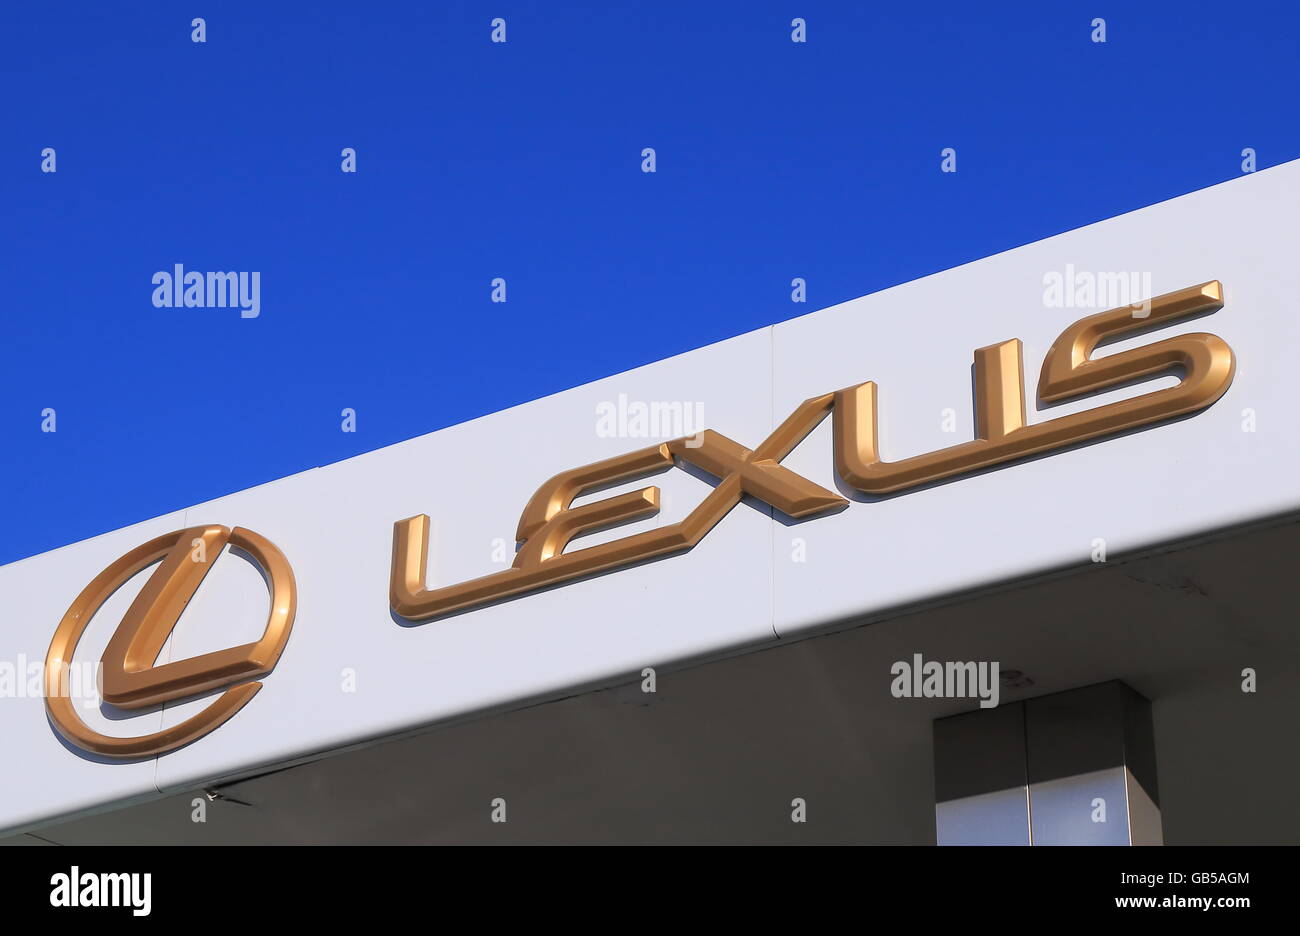 Lexus car manufacturer Stock Photo